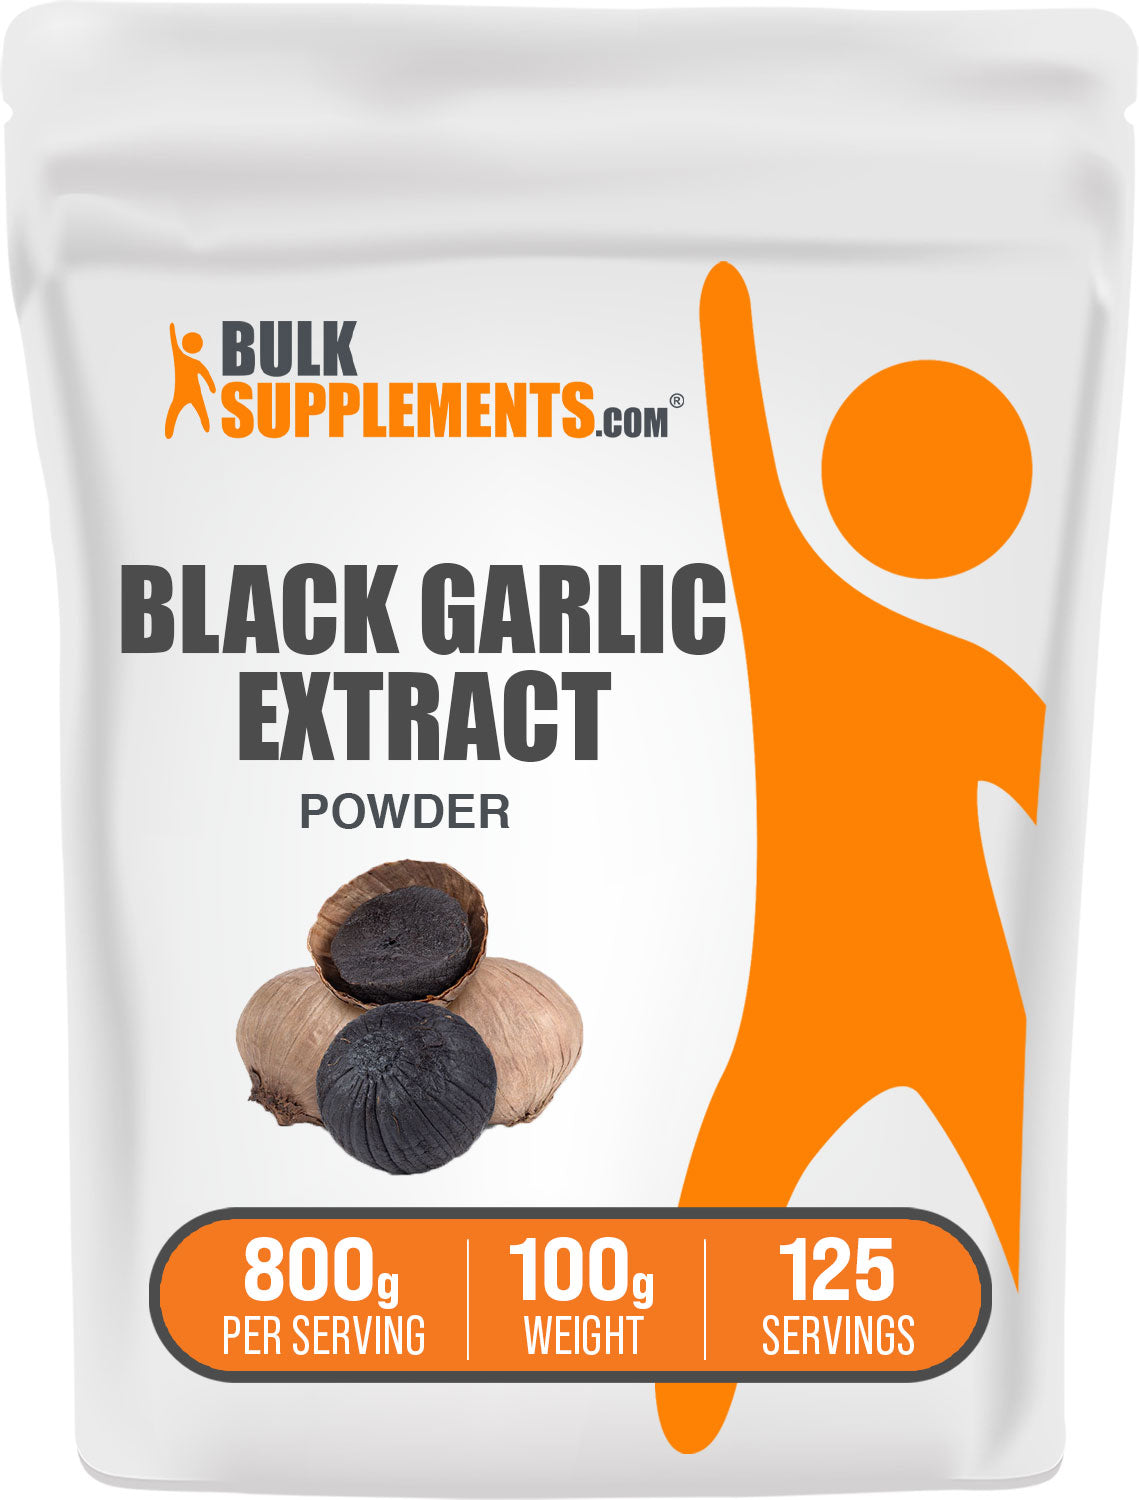 100g black garlic supplements